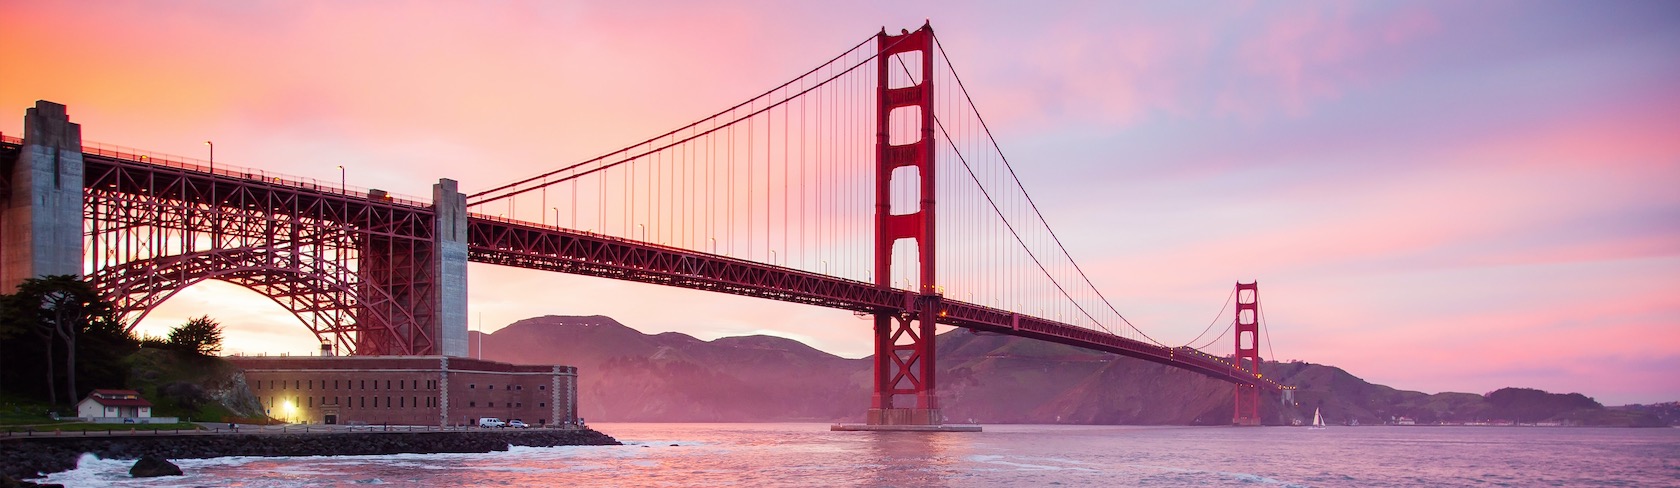 جسر سان فرانسيسكو غولدن غيت عند غروب الشمس